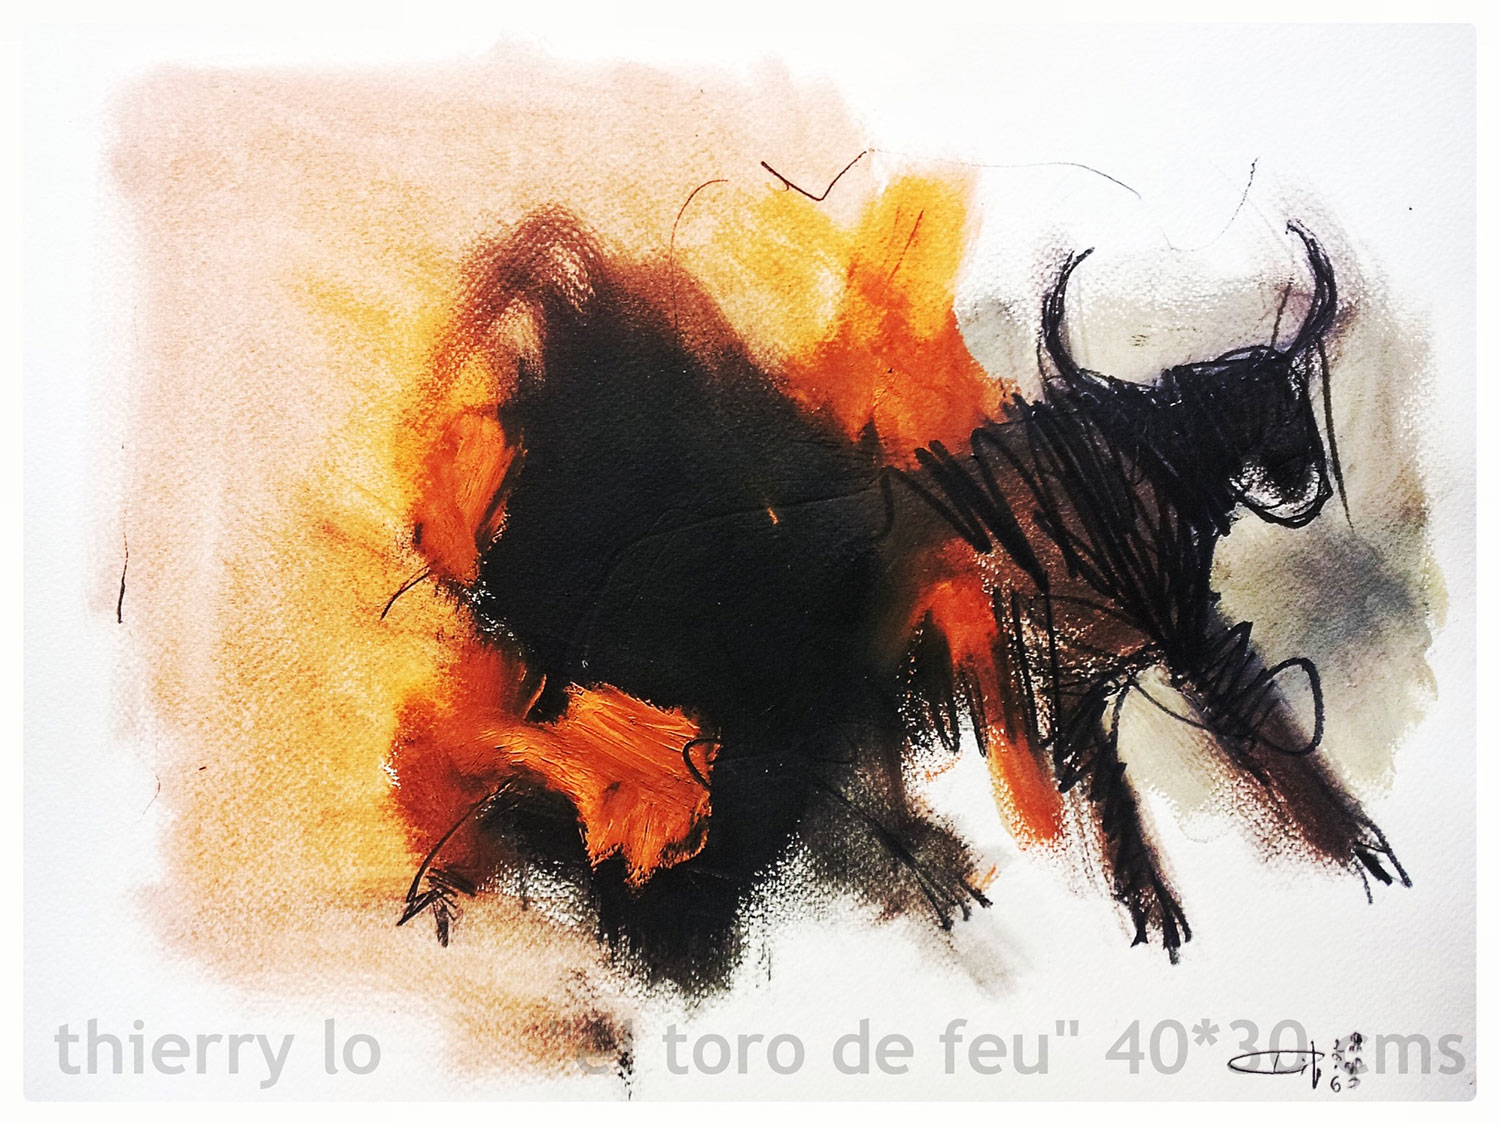 Tilo - El toro de feu